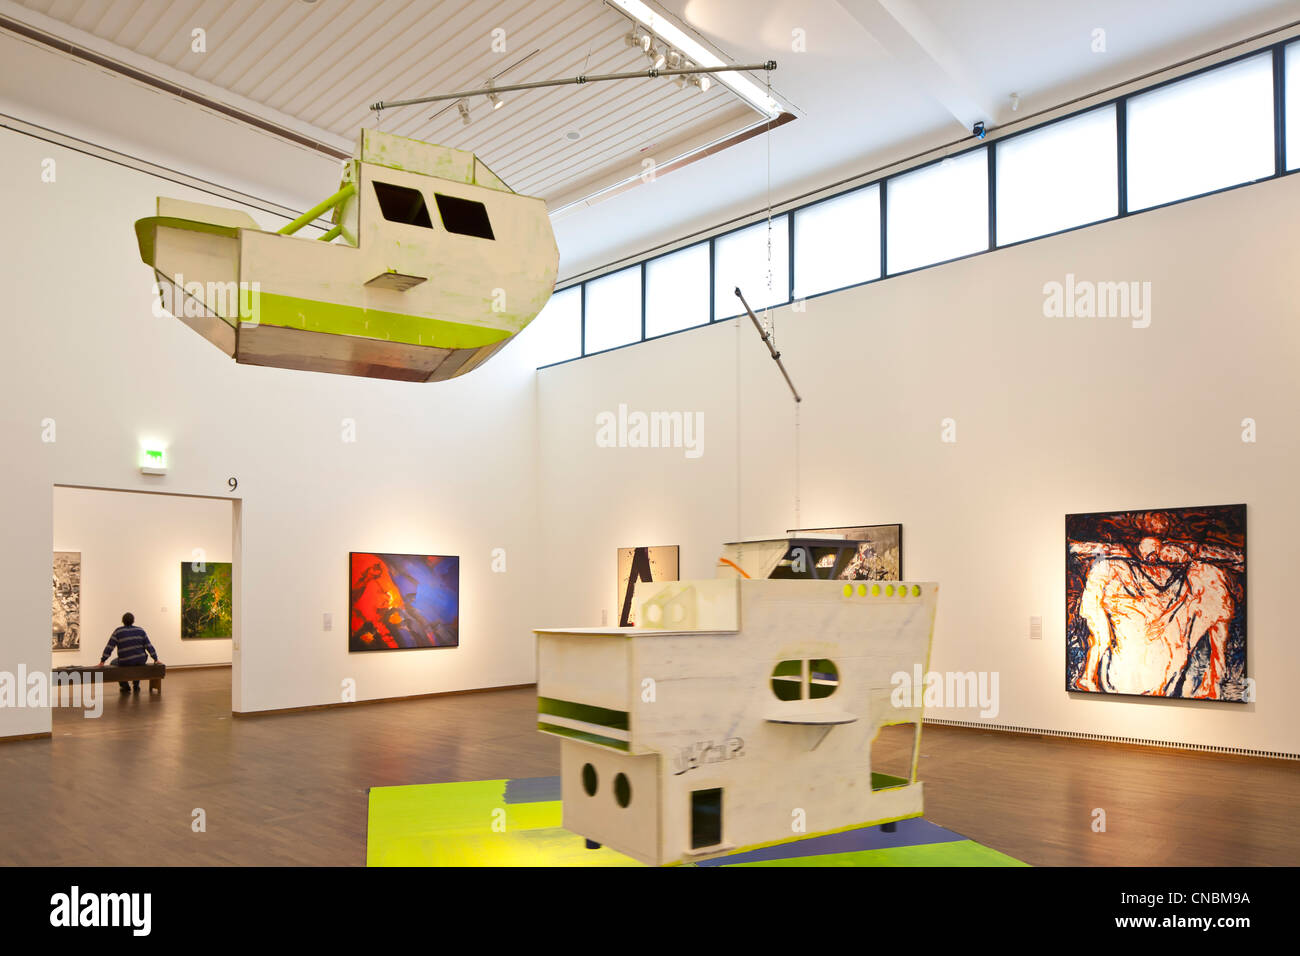 L'Autriche, Vienne, MuseumsQuartier, Leopold Museum, ouvert en 2001, l'une des plus importantes collections d'art moderne à l'Autrichienne Banque D'Images